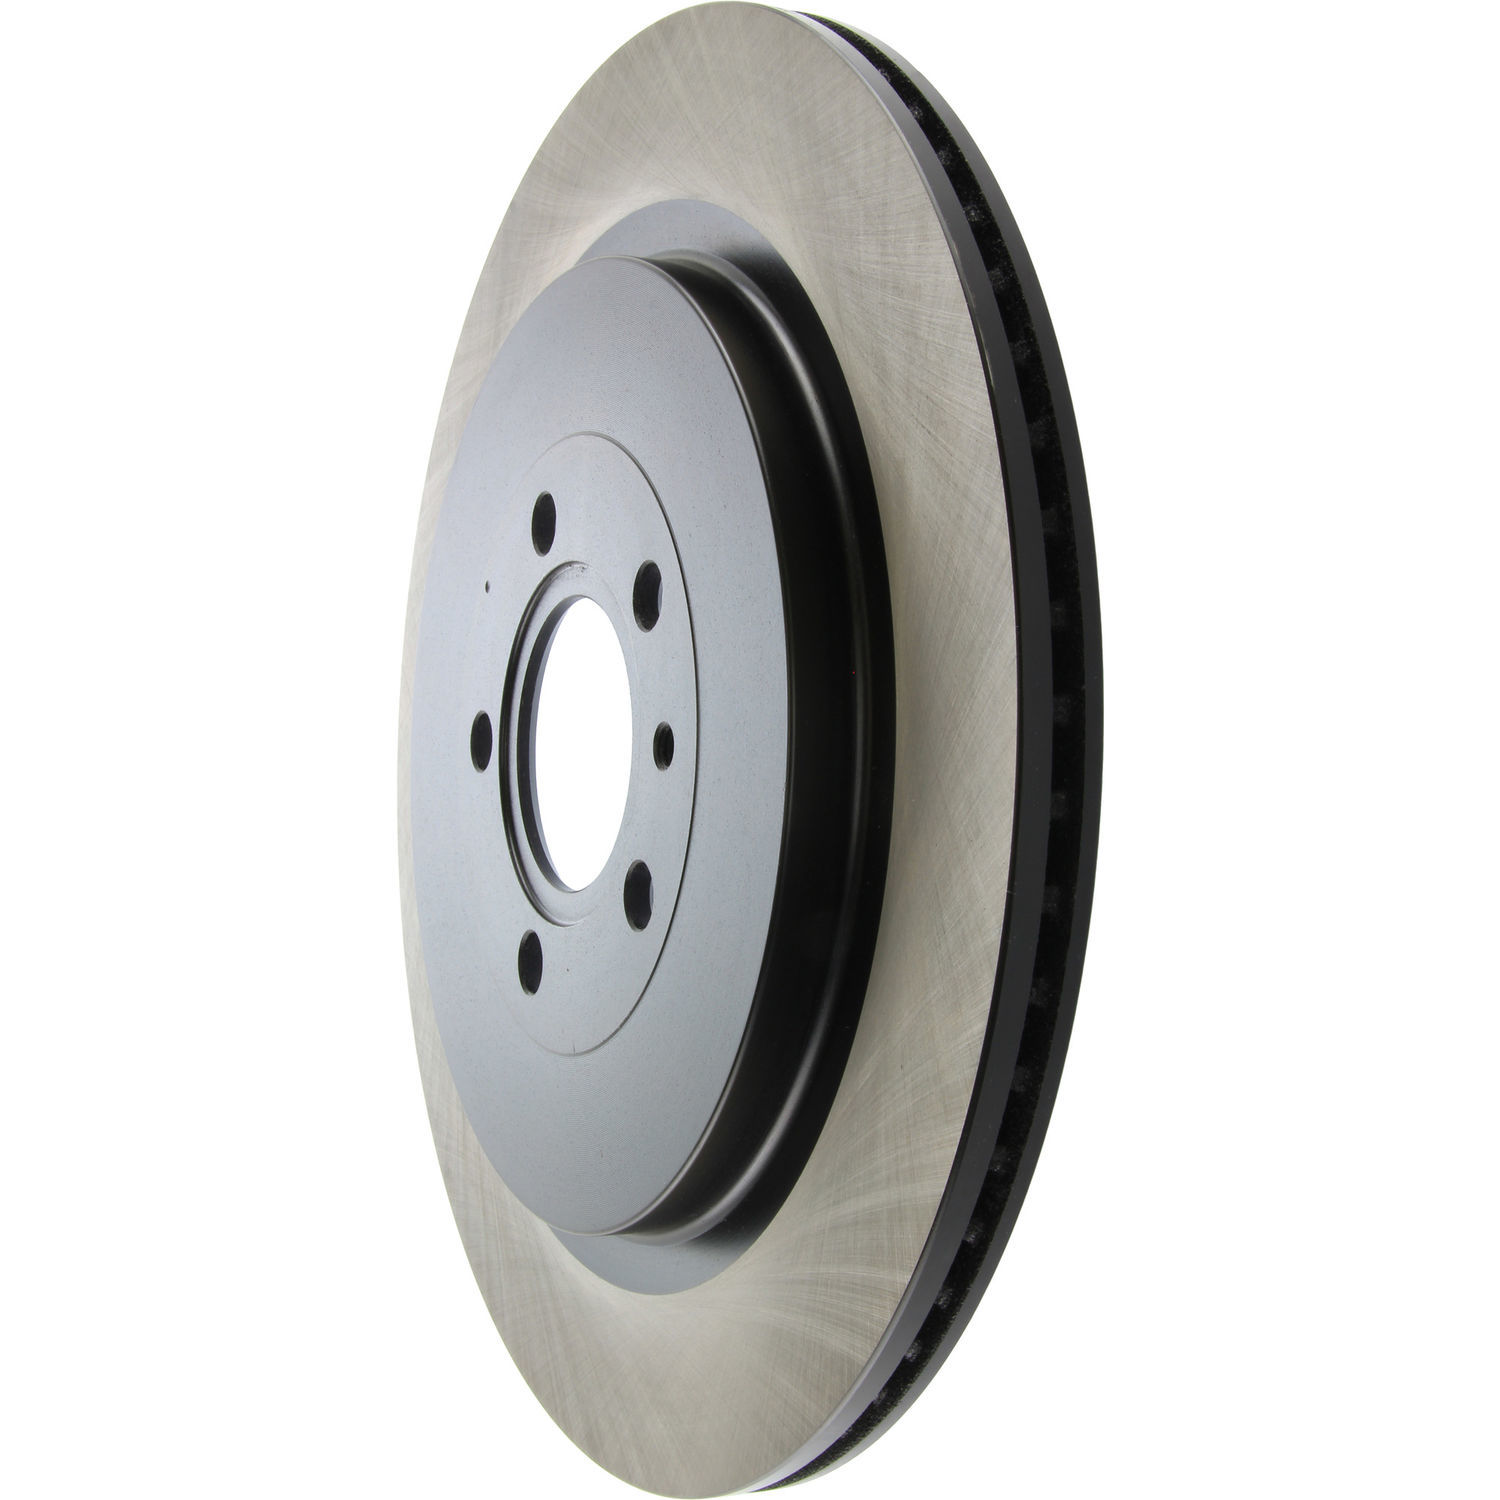 CENTRIC PARTS - Centric Premium High Carbon Alloy Disc Brake Rotors (Rear) - CEC 125.61105